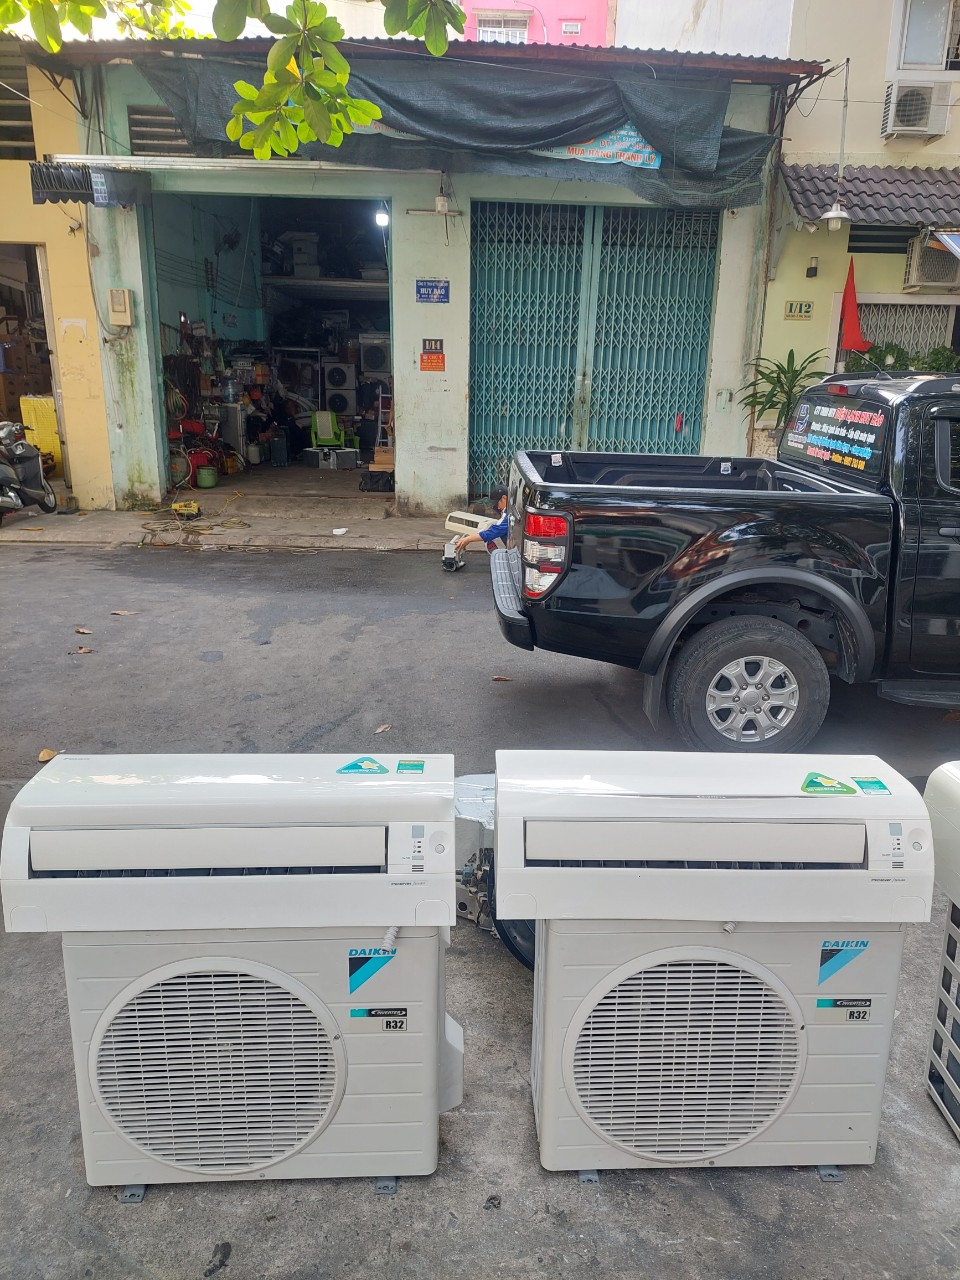 Thu mua máy lạnh cũ bình tân 0907 243 680 Mr Bảo là một trong những điểm thu mua máy lạnh cũ quận Bình Tân